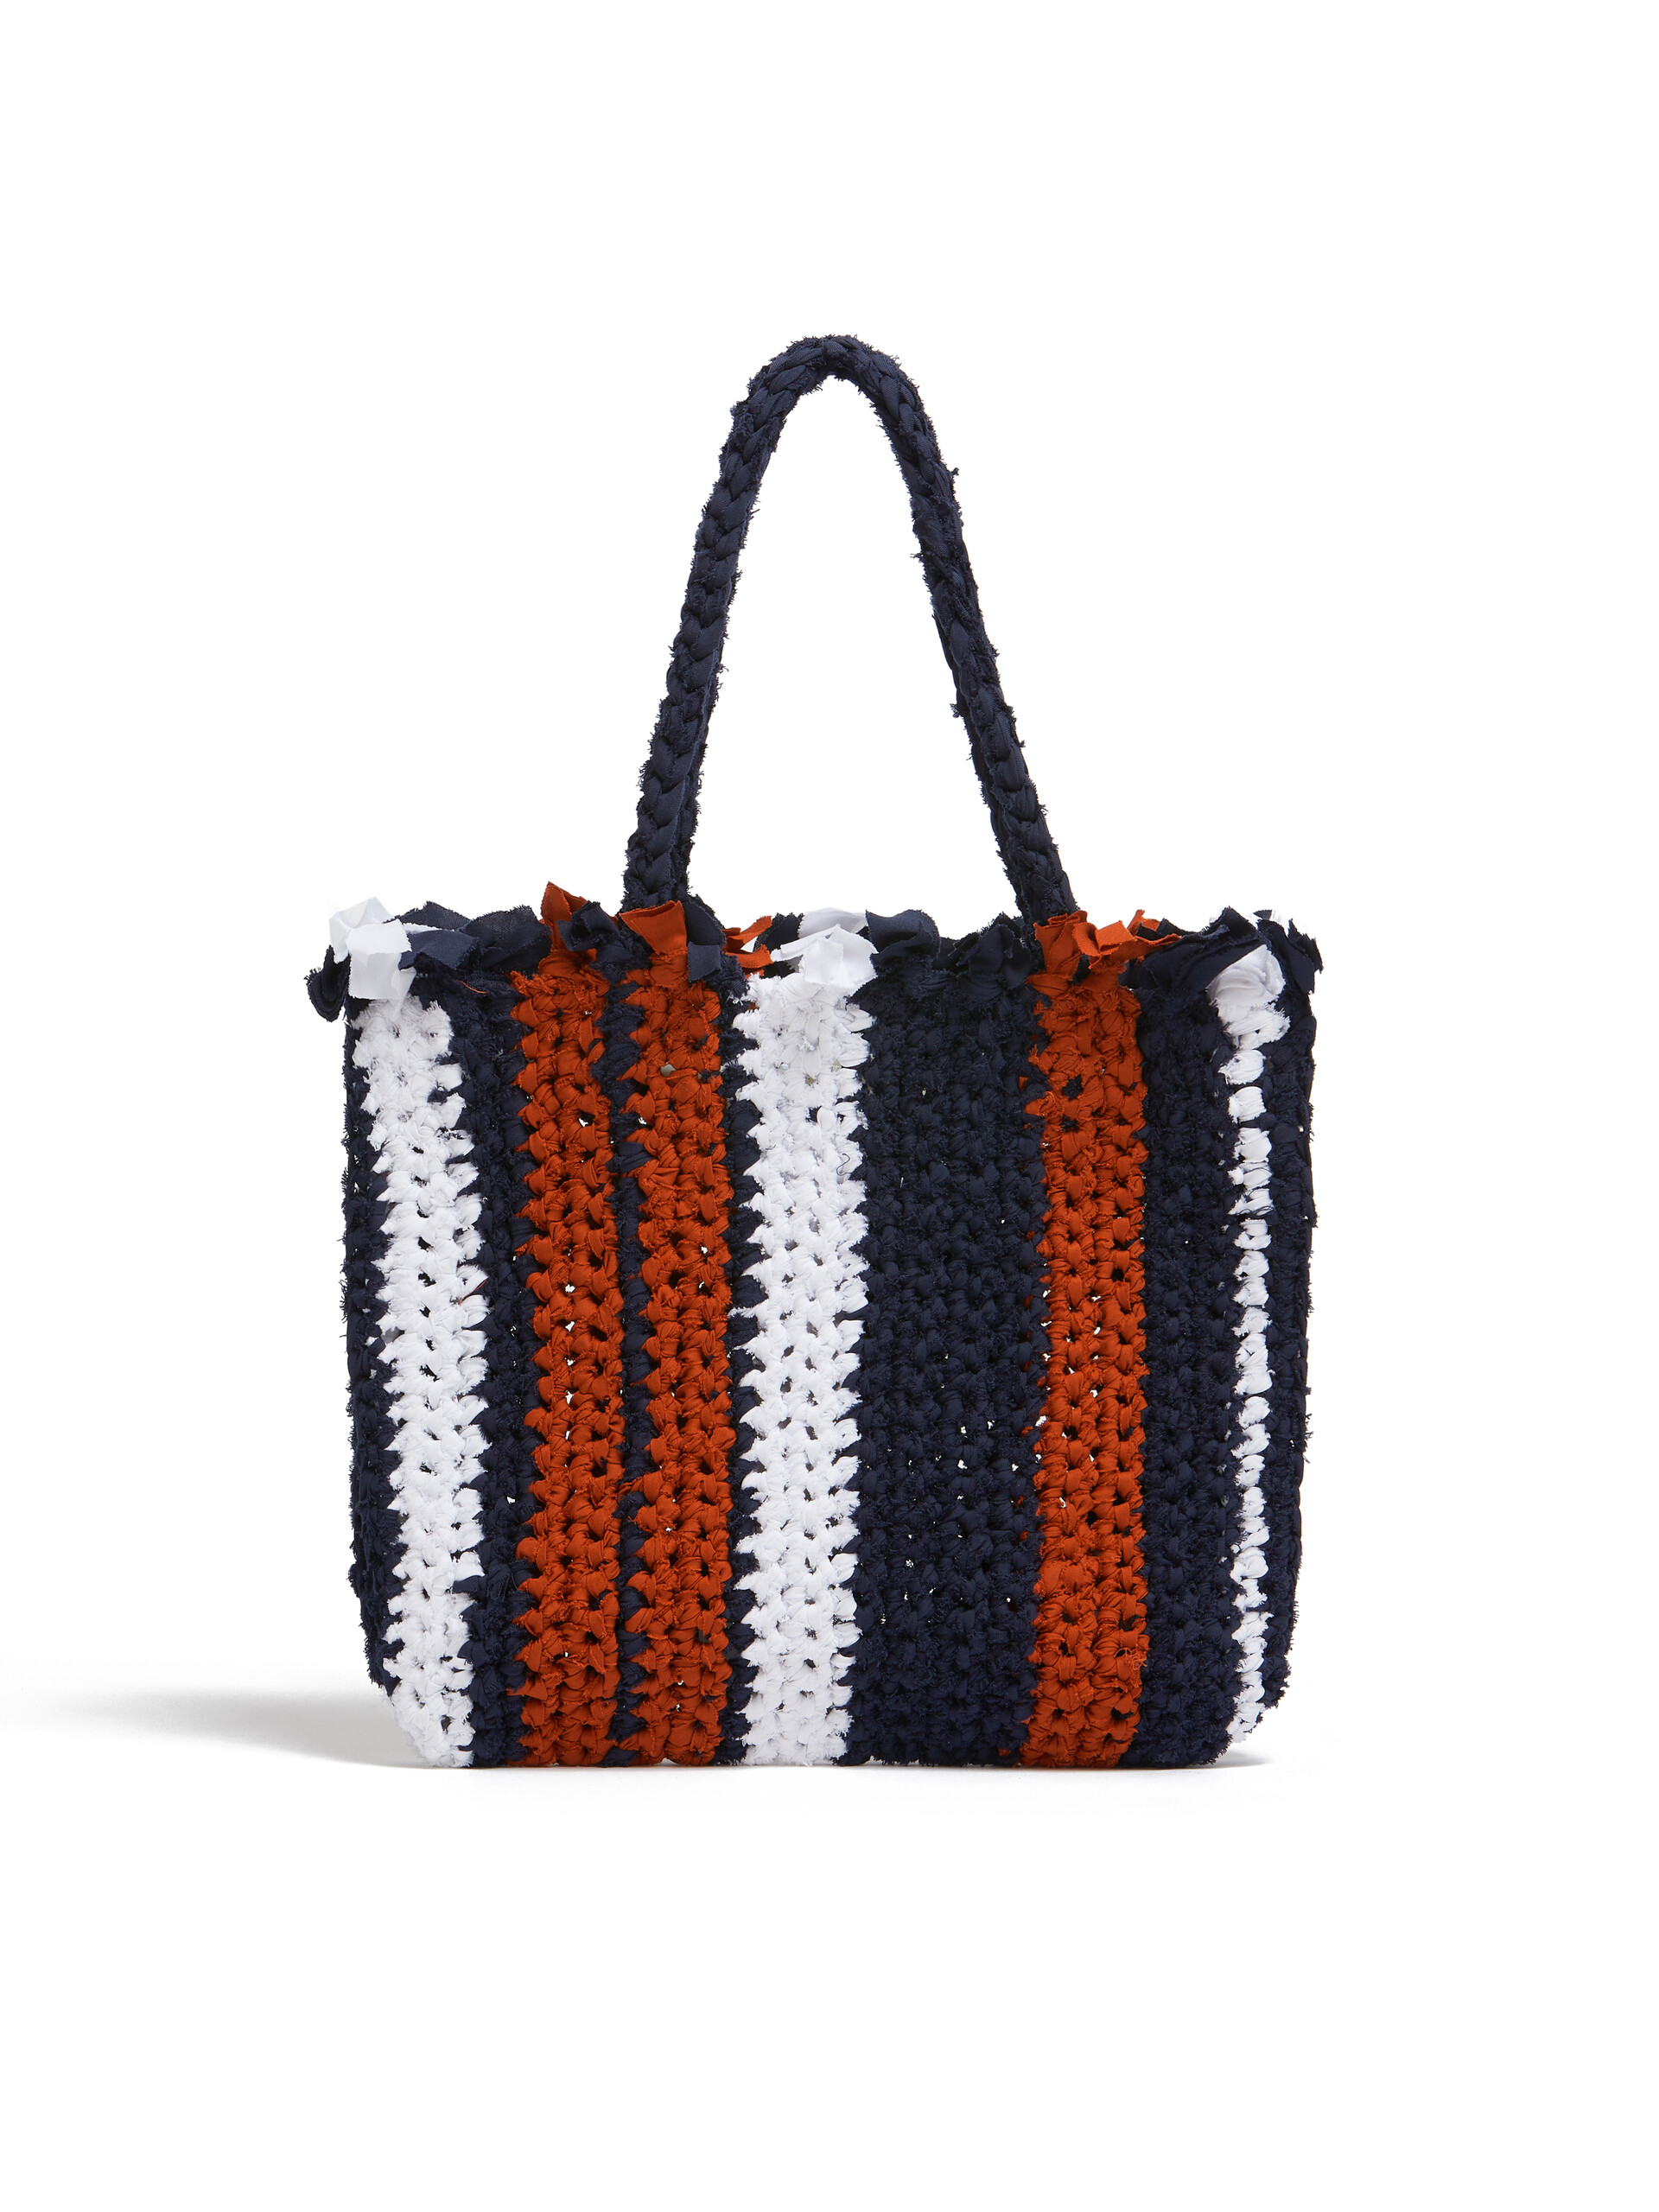 MARNI MARKET JERSEY Tasche aus Baumwolle in Rosa und Blau - Shopper - Image 3